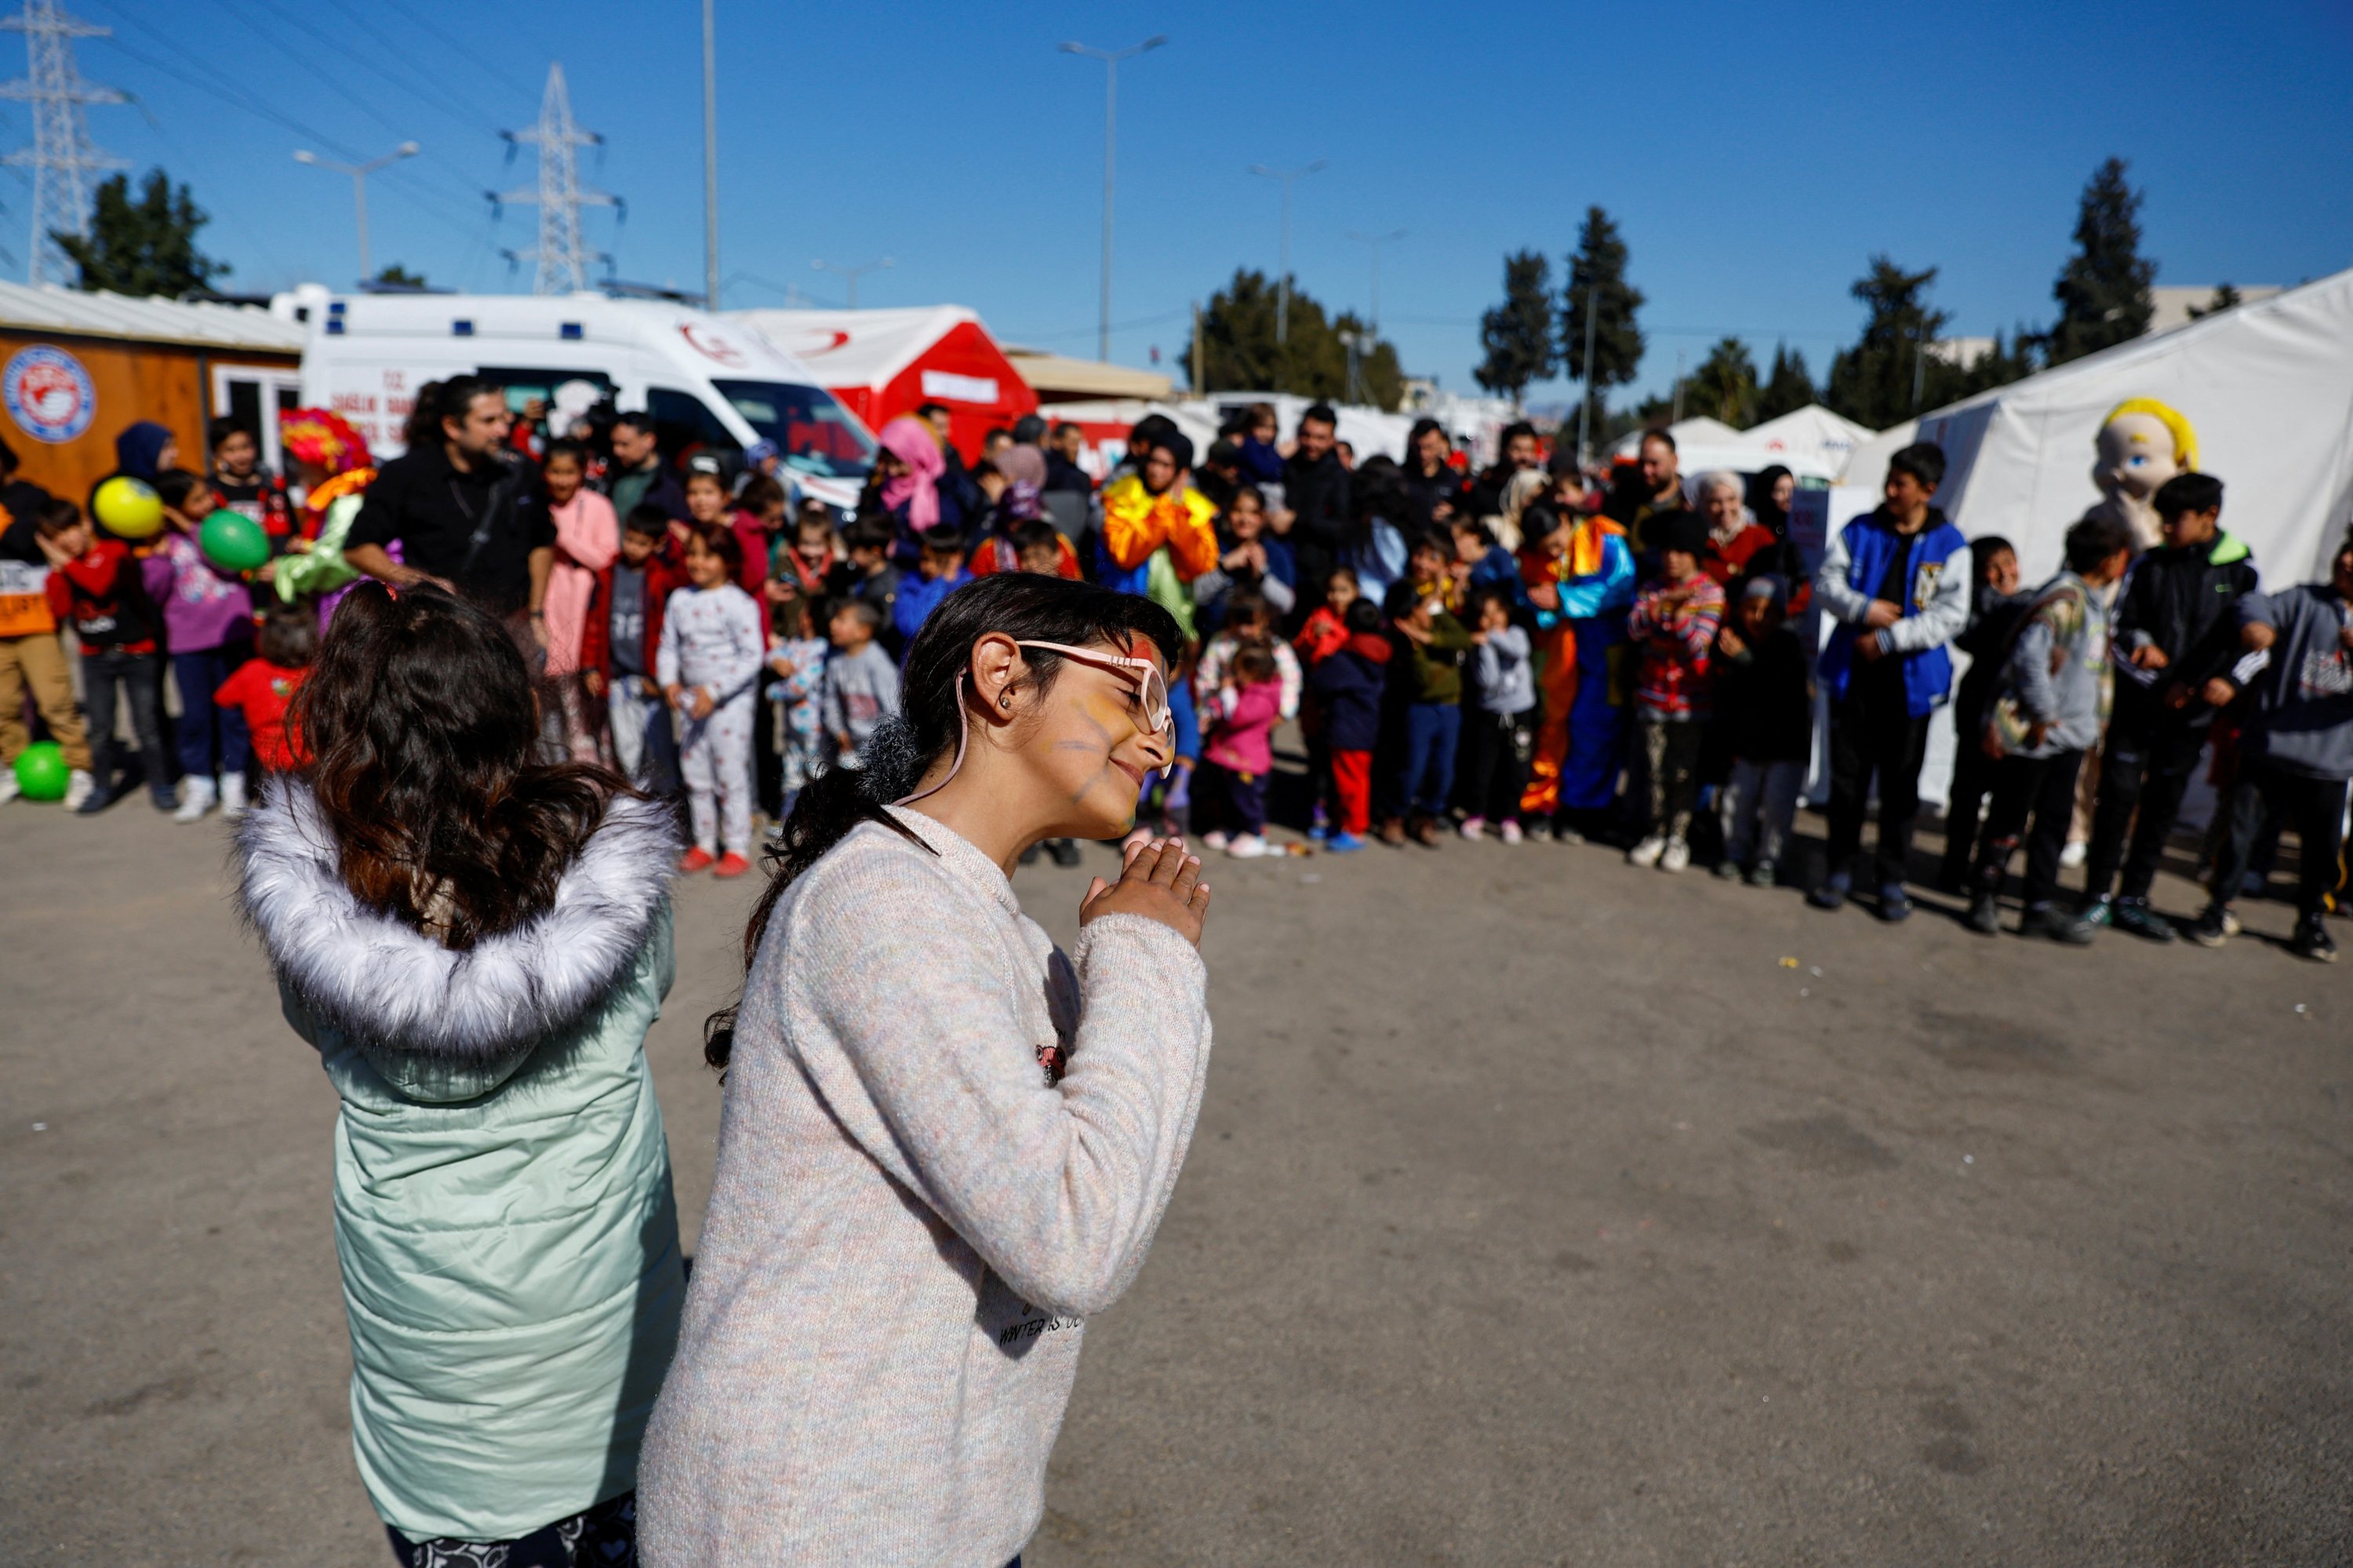 Anak-anak, yang terkena dampak gempa mematikan, mengikuti kegiatan yang bertujuan untuk menghibur mereka dan mendukung kesehatan mental mereka di Osmaniye, Türkiye tenggara, 16 Februari 2023. (Foto Reuters)